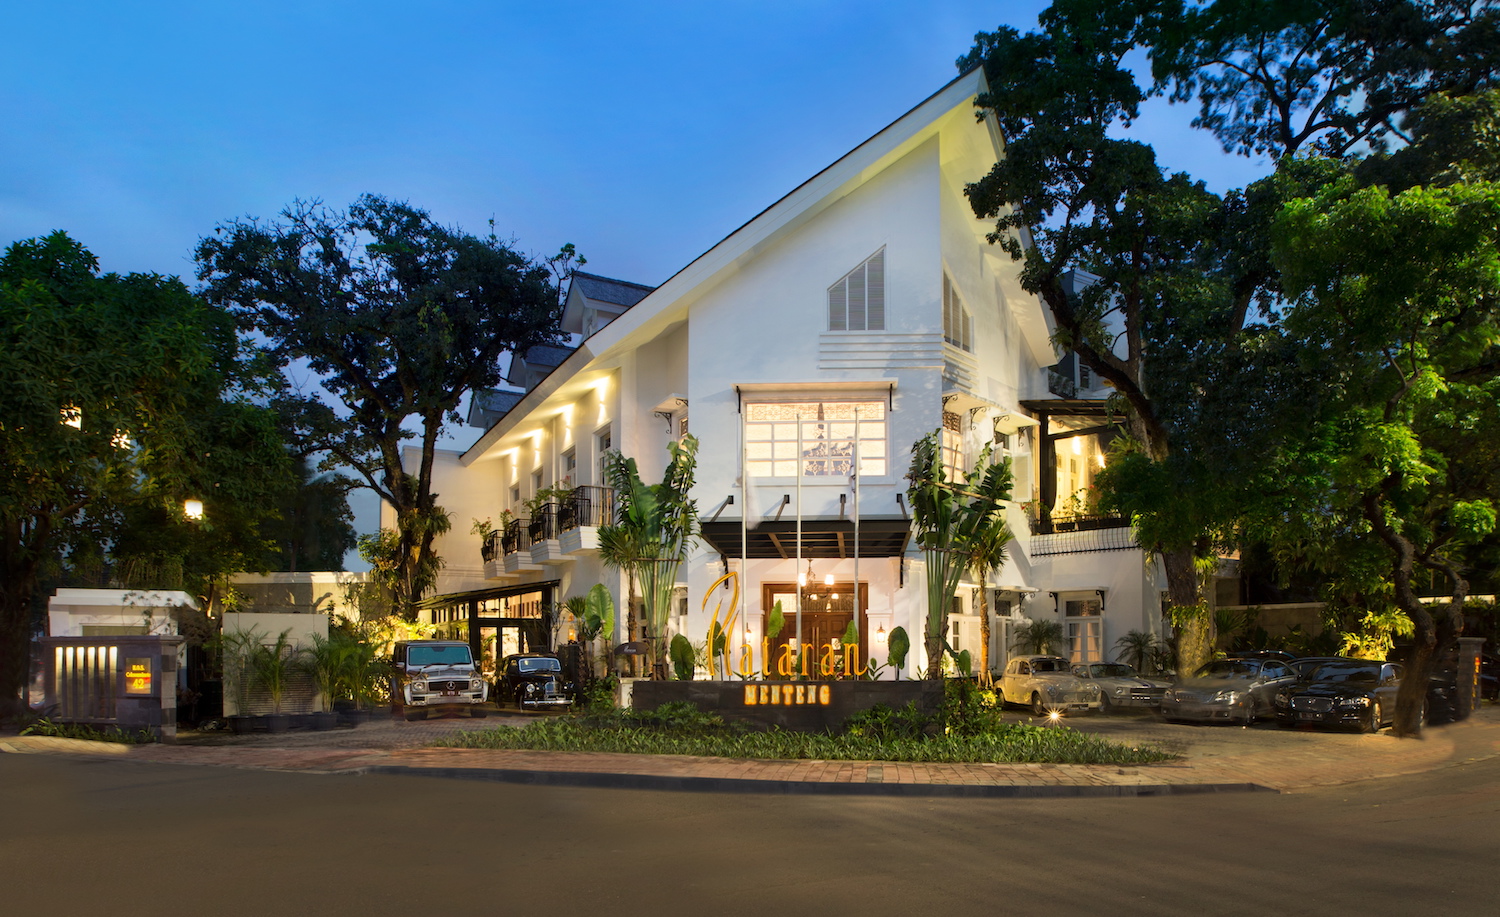 5 Rekomendasi Restoran Untuk Bukber Di Jakarta | @skitchen_idn